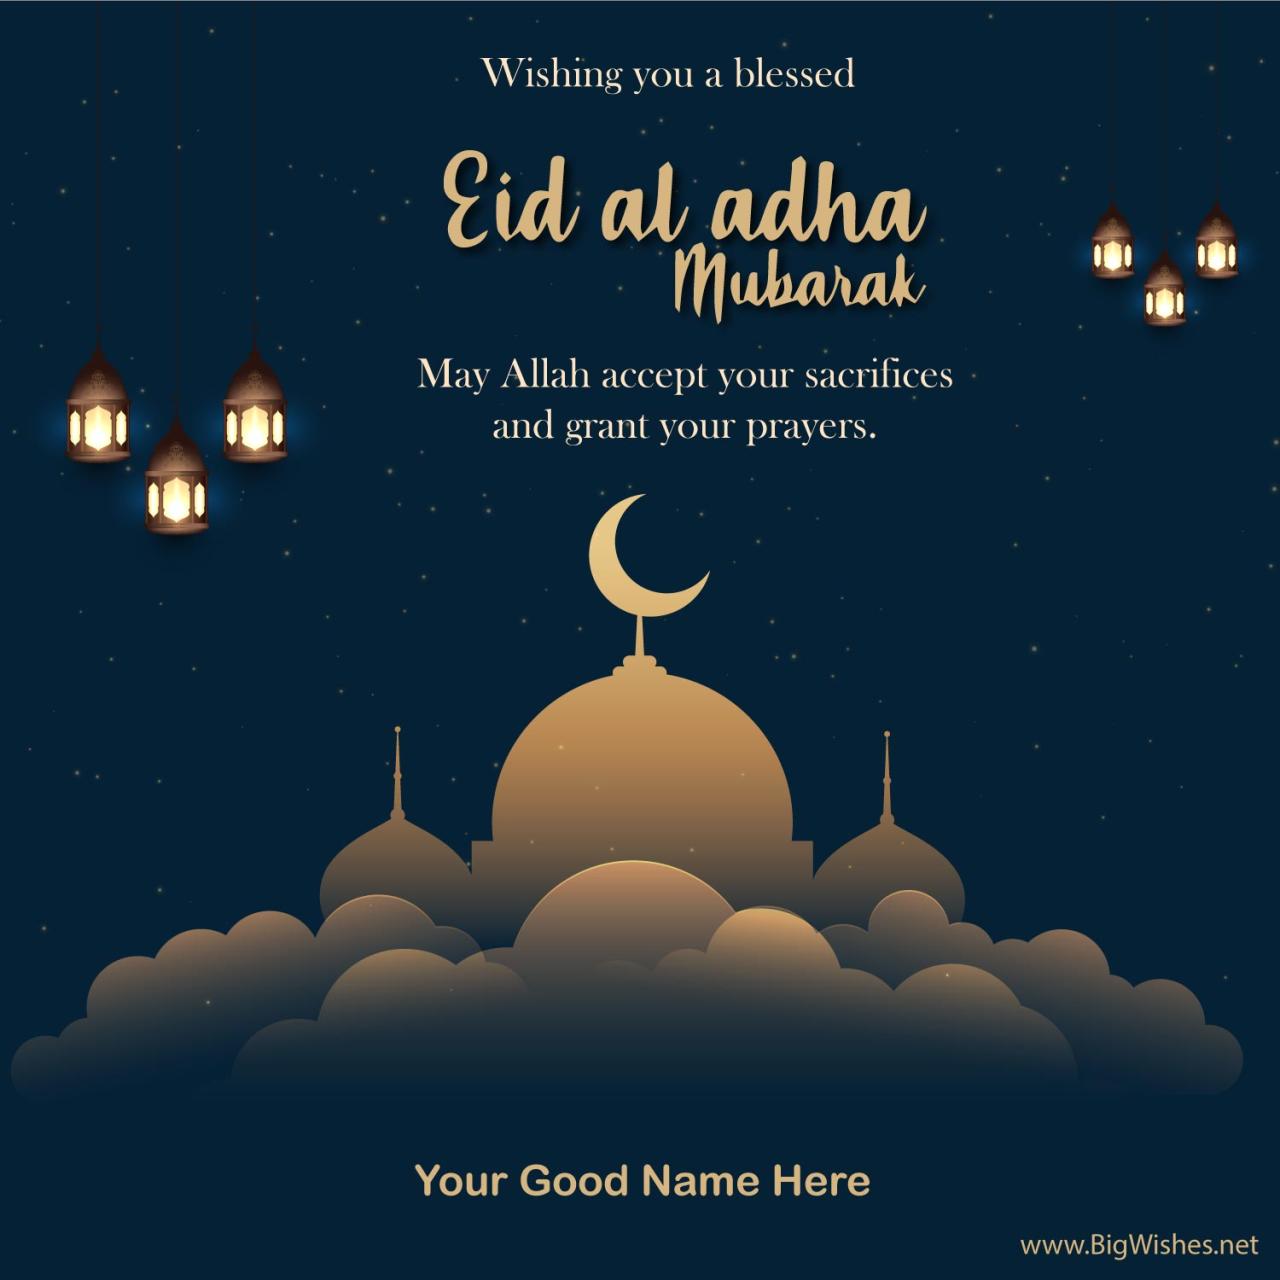 Eid adha lunar